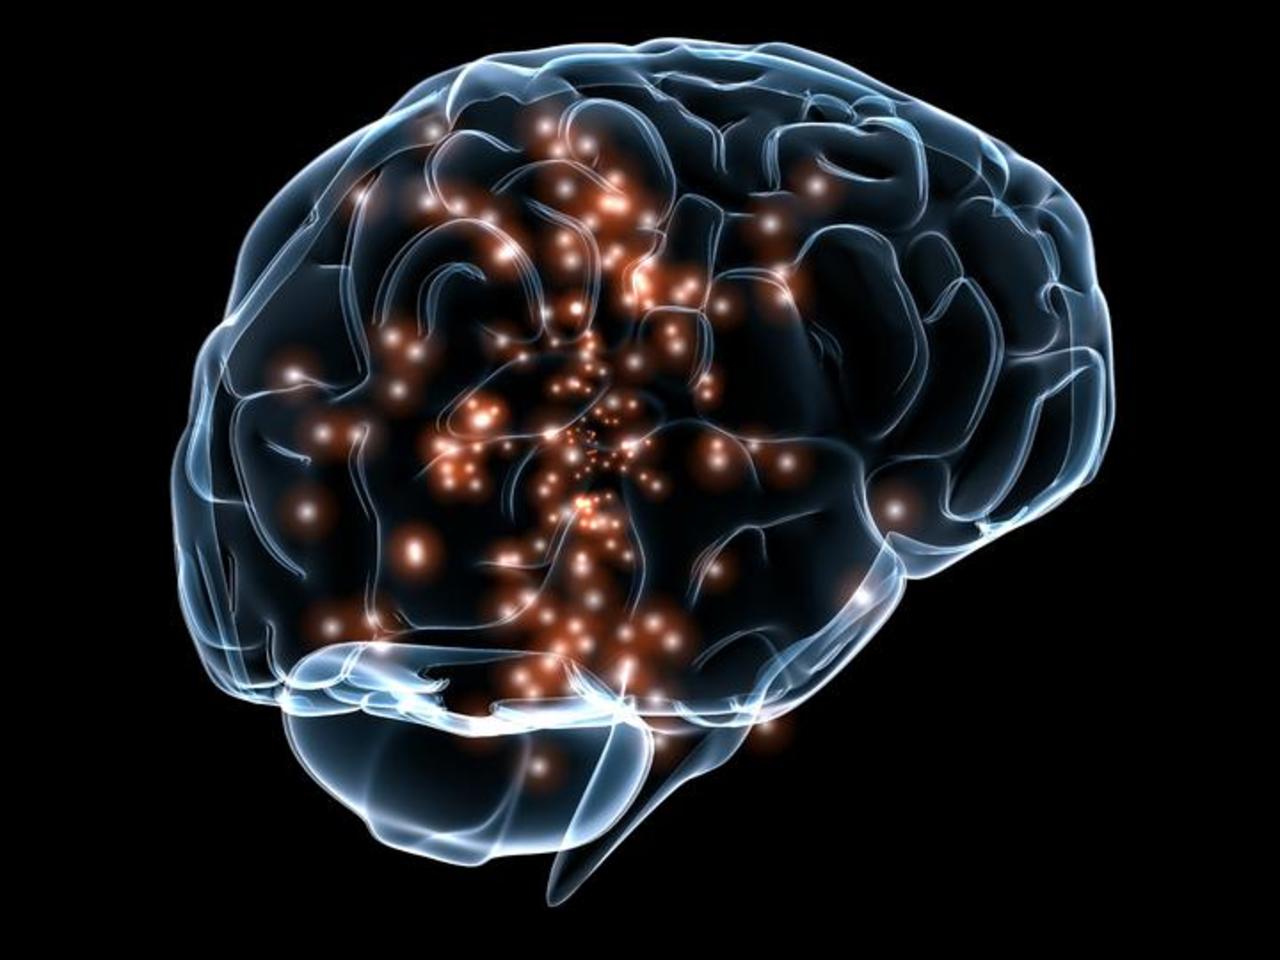 Un implante cerebral puede mejorar algunas funciones cognitivas tras una lesión traumática